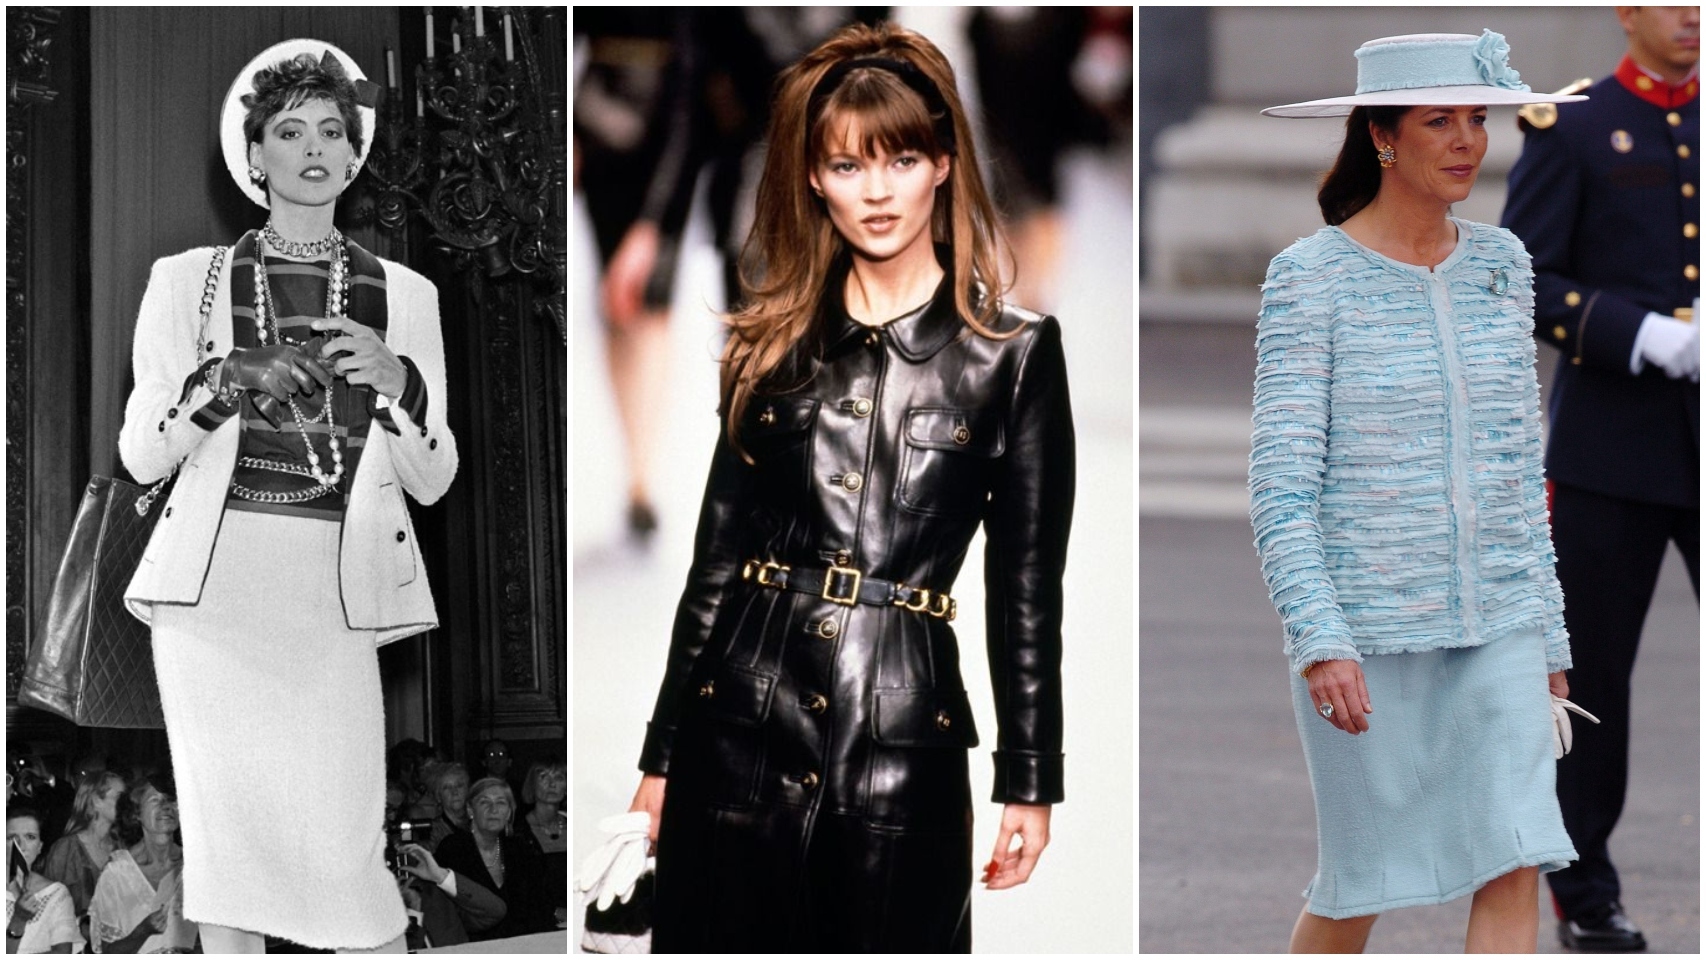 De izquierda a derecha: Inés de la Fressange, Kate Moss y Carolina de Mónaco vestida de Karl Lagerfeld para Chanel.